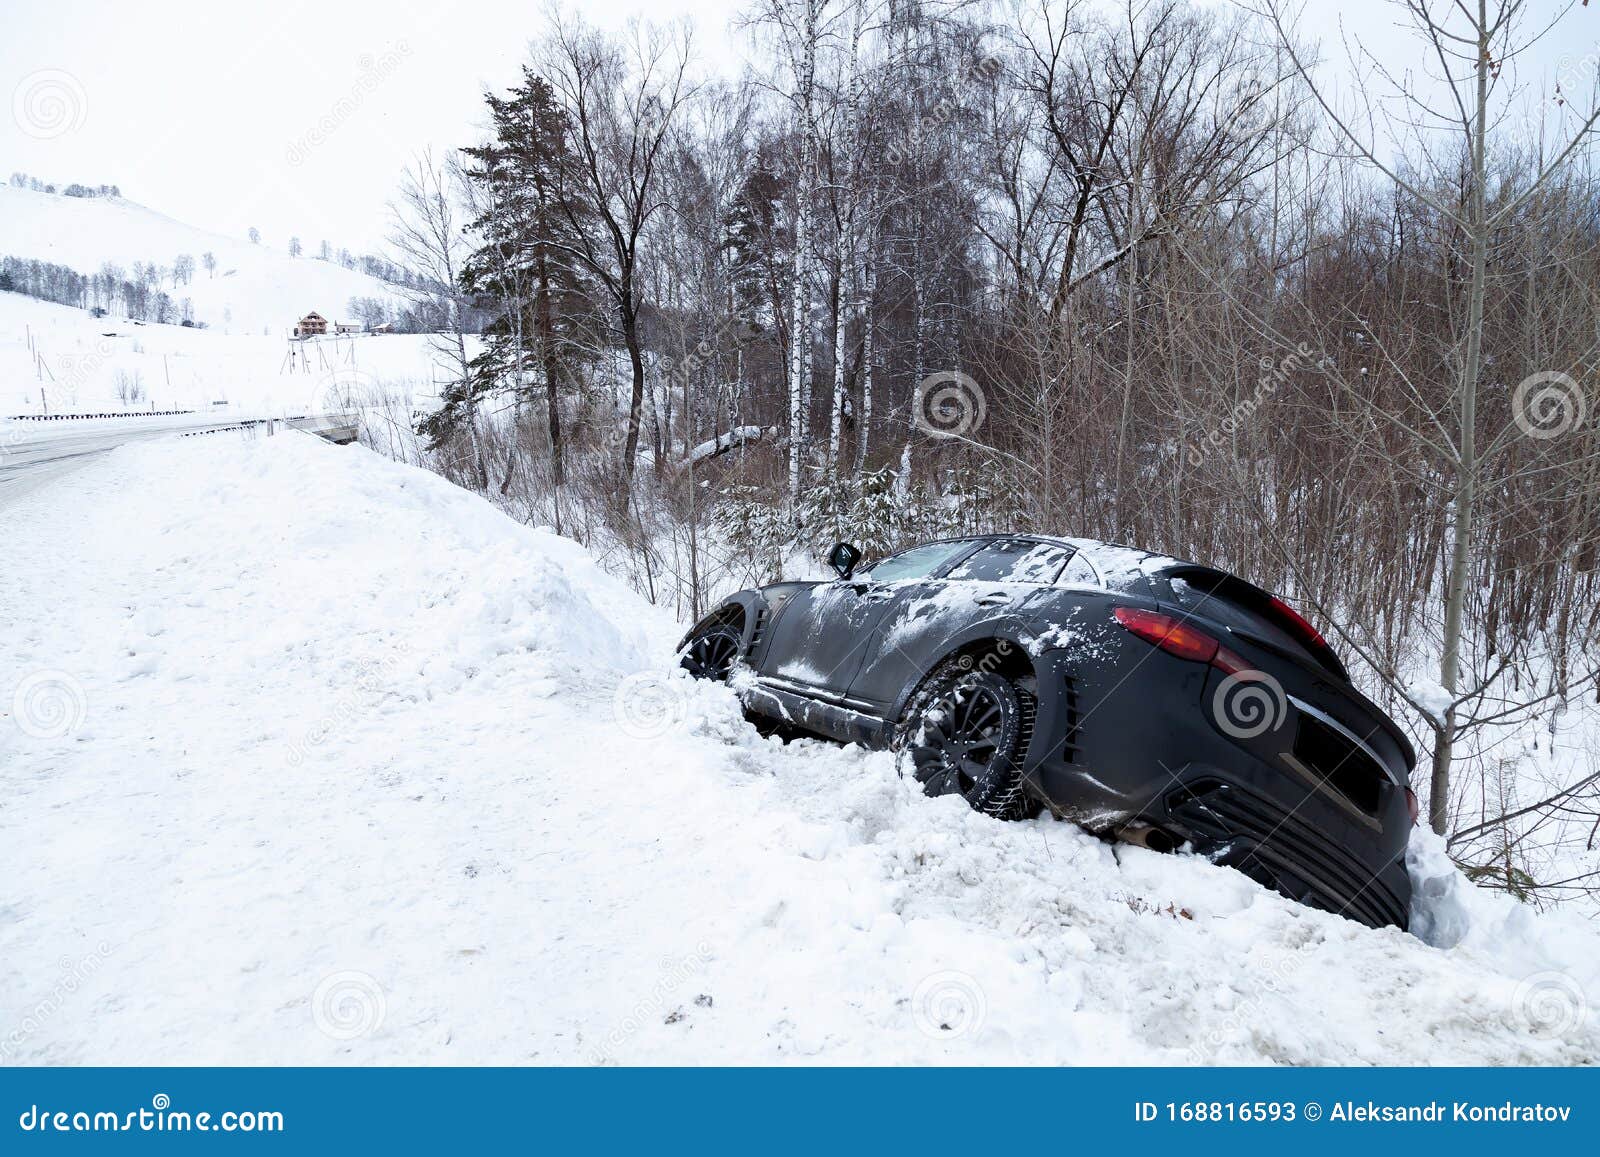 Kanadier baut Auto aus Schnee im Halteverbot - Polizei fällt drauf rein